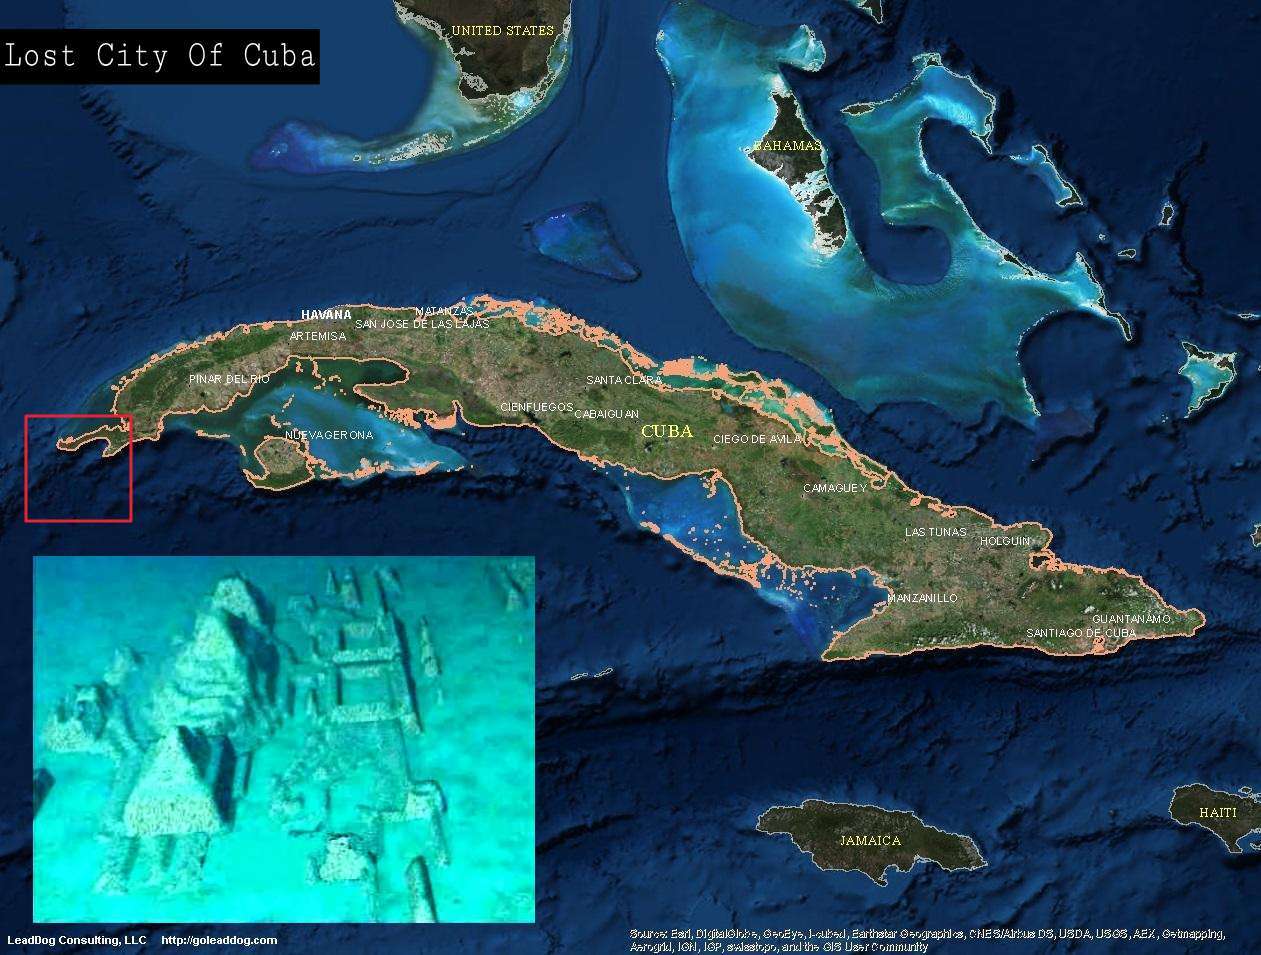 Te taone nui o Cuba - Koinei te taone ngaro o Atlantis? 4